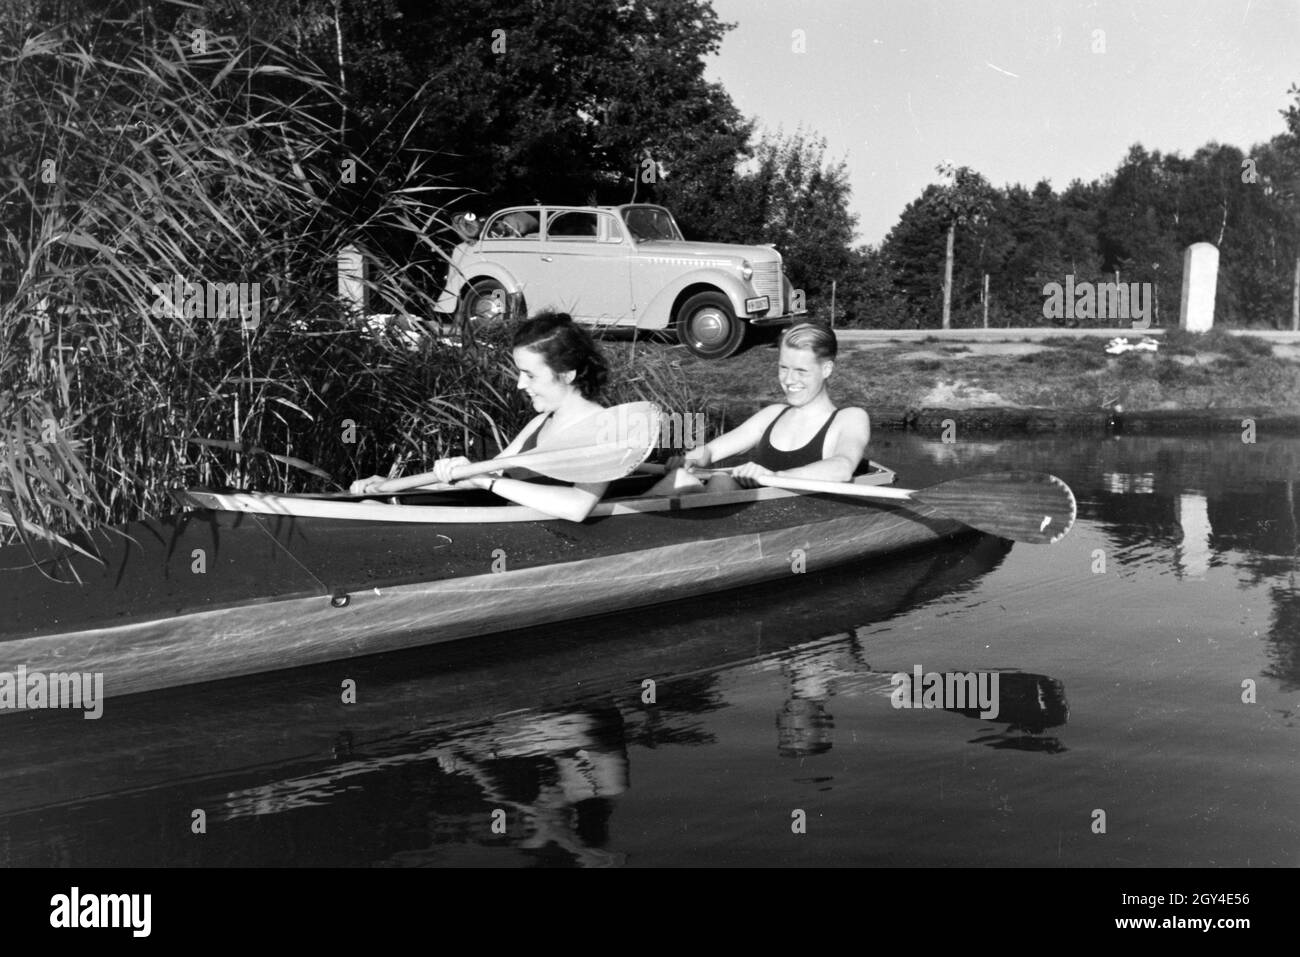 Junges Paar paddelt im Boot in Nähe des Ufers auf einem vedere, Deutschland 1930er jahre. Coppia giovane paddling in una barca sul lago vicino al fiume, Germania 1930s. Foto Stock